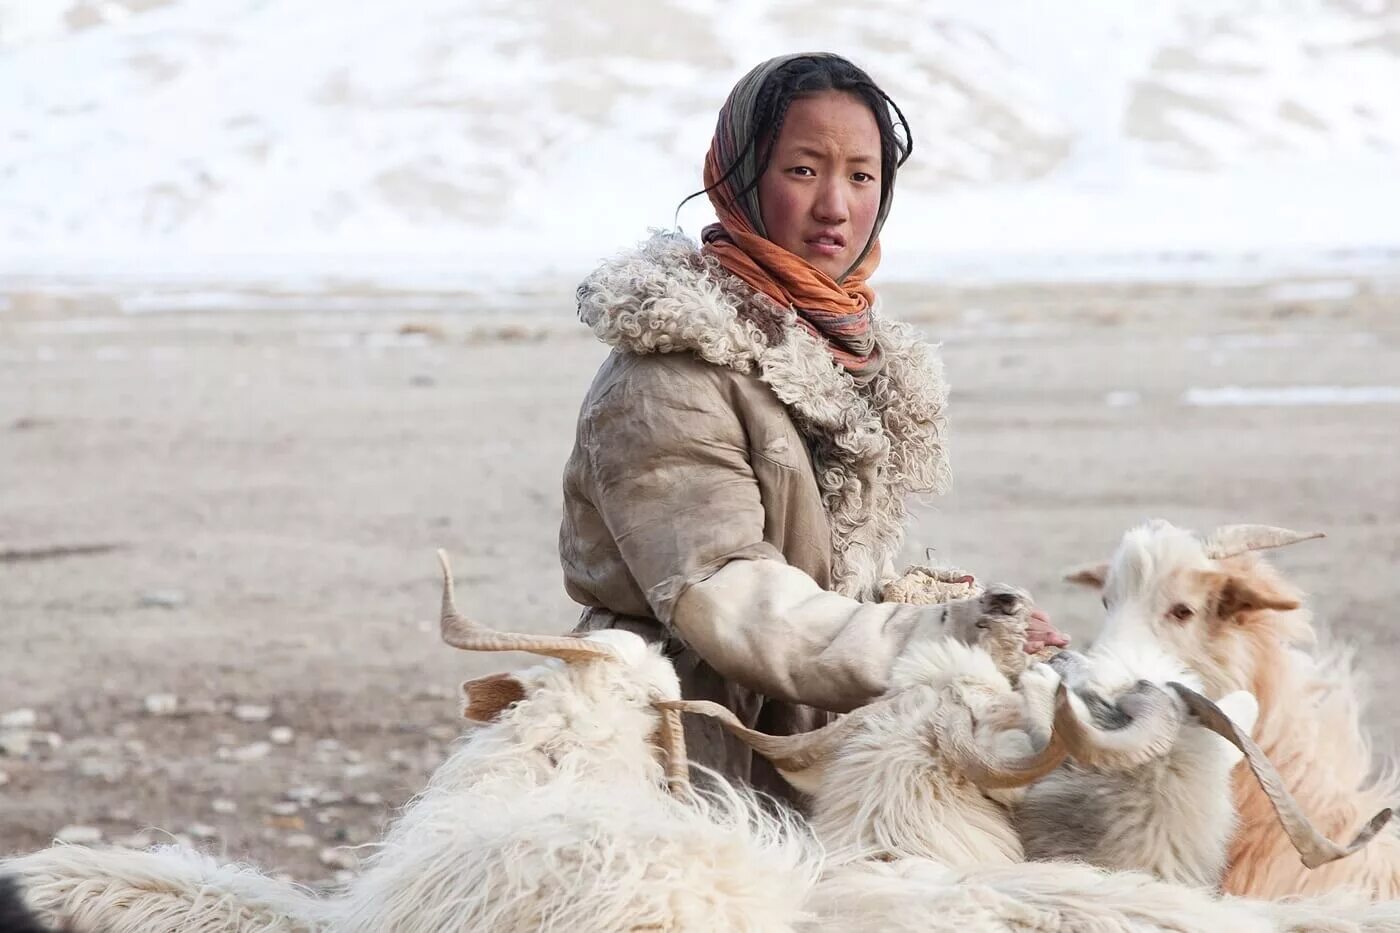 Монгол скотовод 4 буквы. Тибет кочевники. Ньима Тибет. Жители горного Тибета. Жизнь в Тибете.